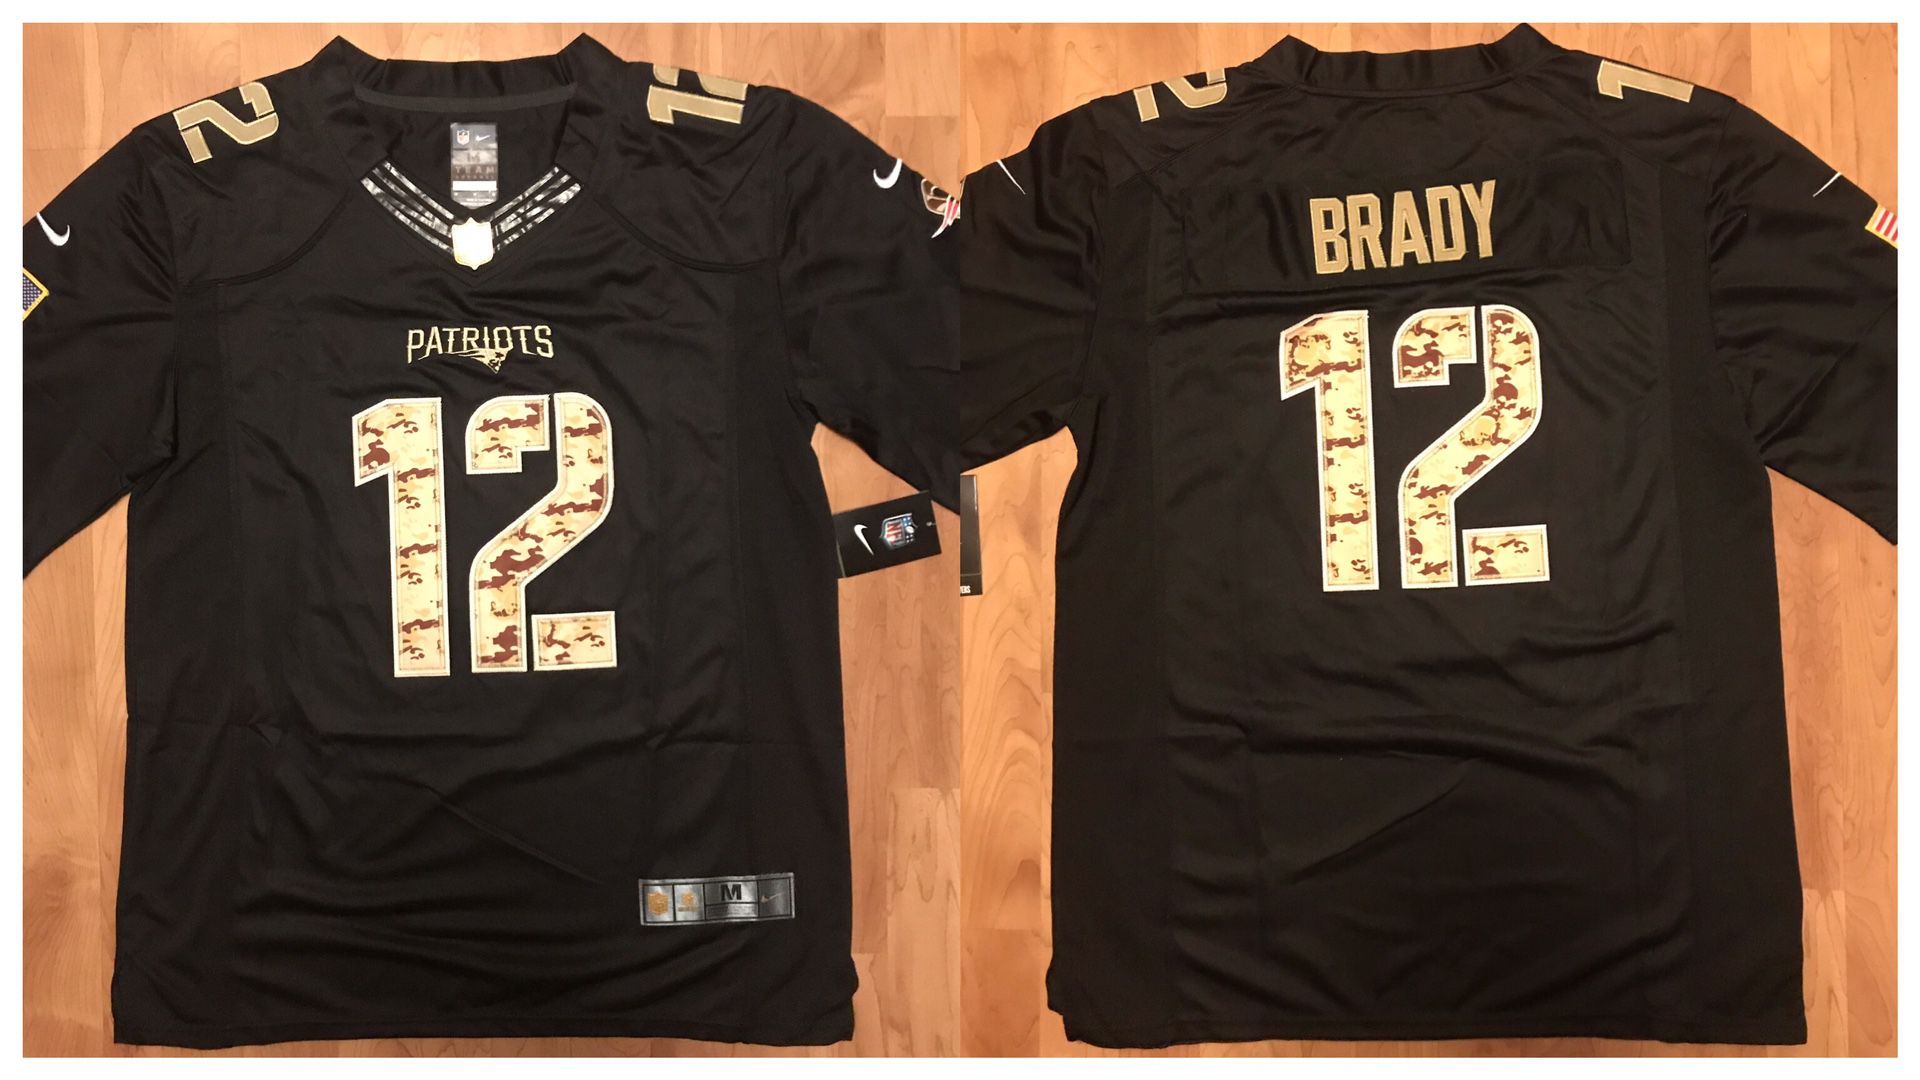 Patriots Brady stiched jerseys